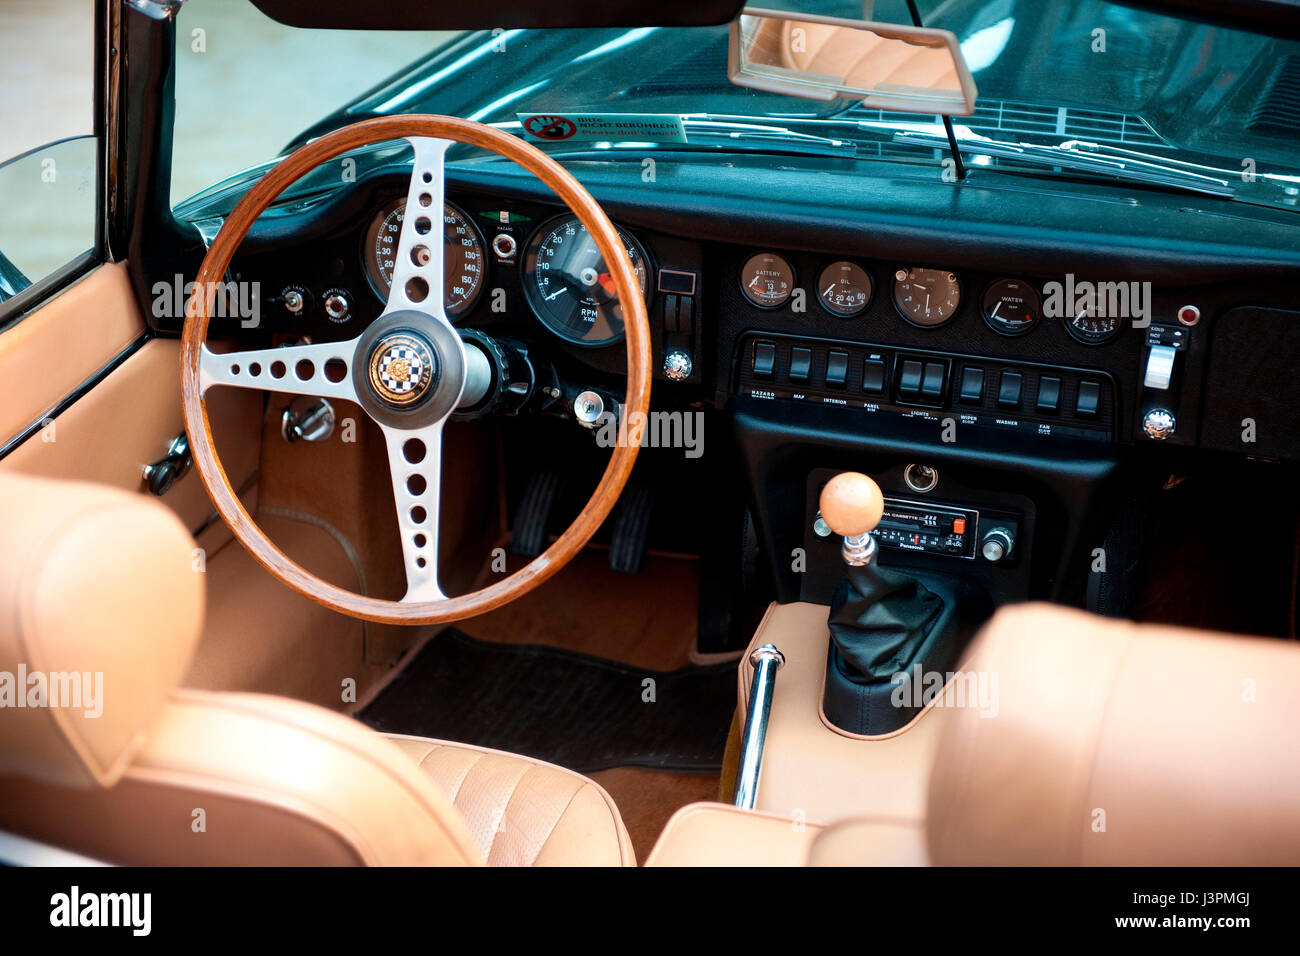 Jaguar E-Type classic car, pozzetto con volante in legno, marcia stick, leva del cambio, il cambio marcia, trasmissione manuale, veterano britannico auto, Gran Bretagna, oncours d'ELEGANZA Foto Stock